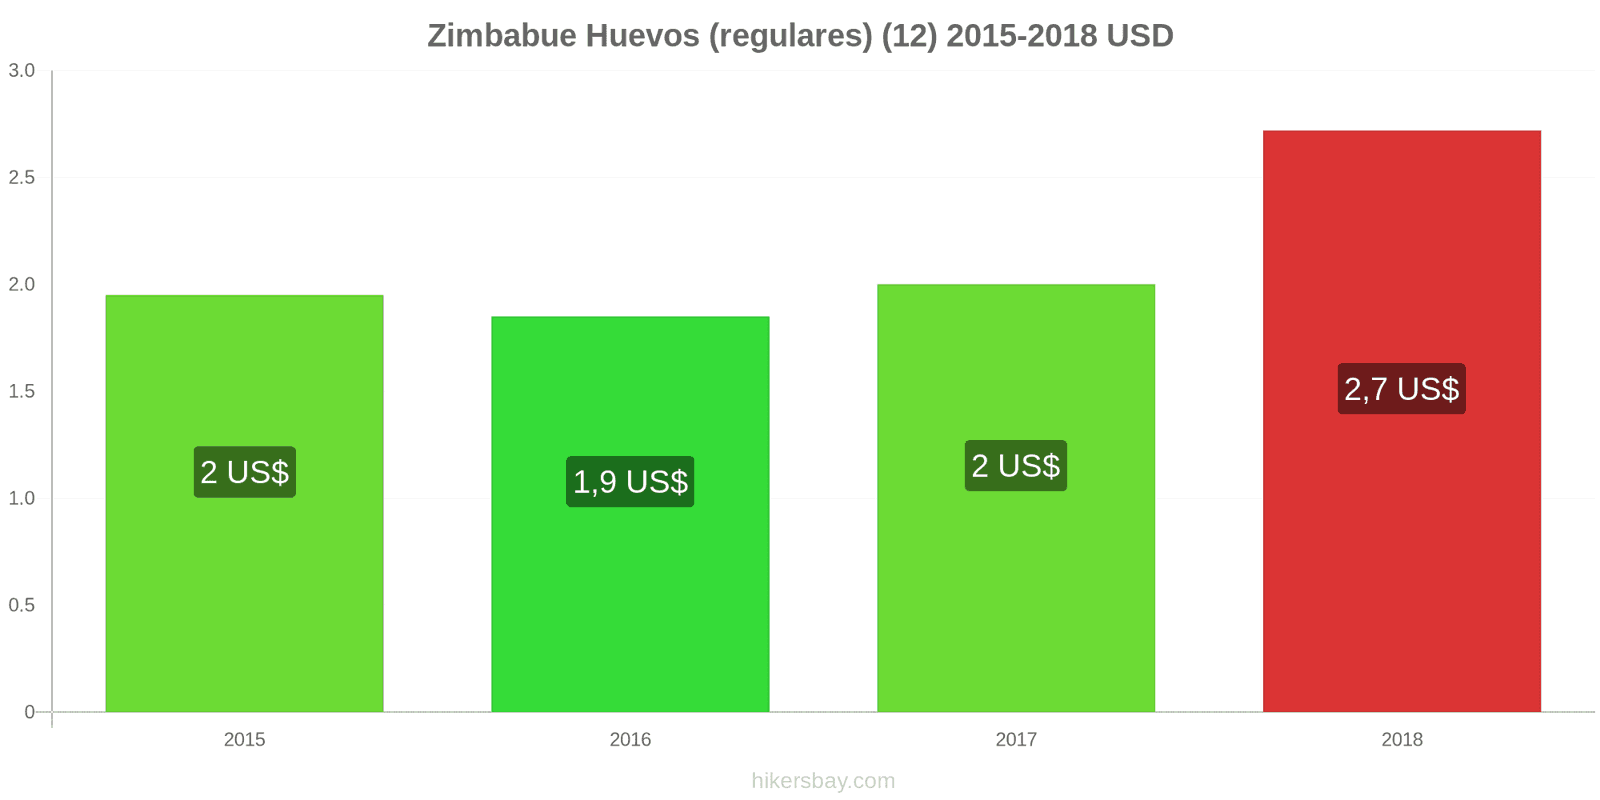 Zimbabue cambios de precios Huevos (normales) (12 unidades) hikersbay.com